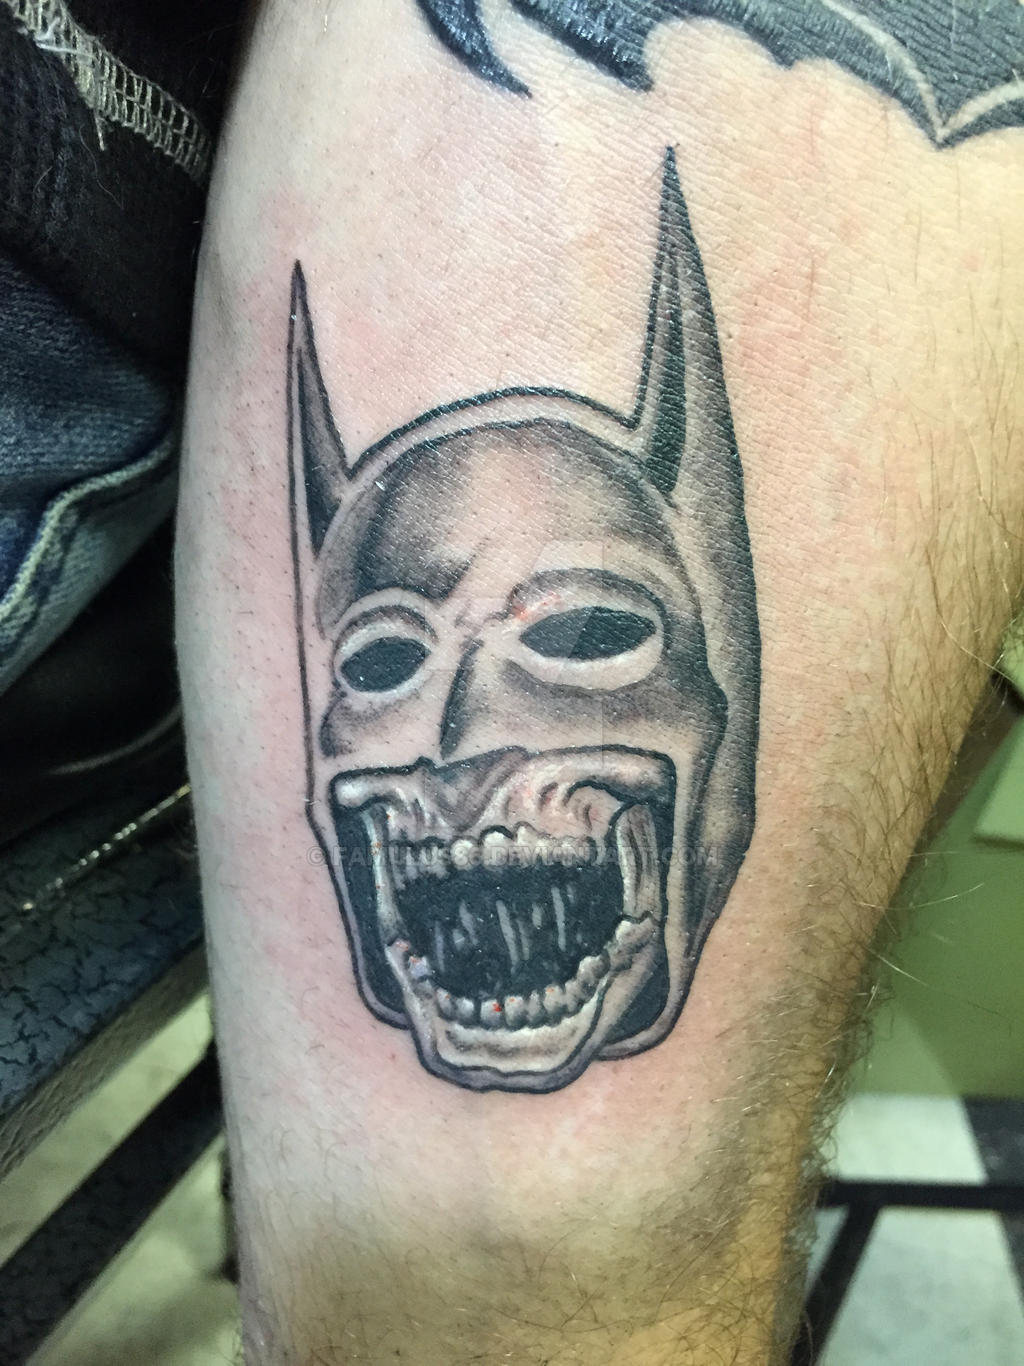 Zombie Batman Tattoo (2014) by famulus86 on DeviantArt